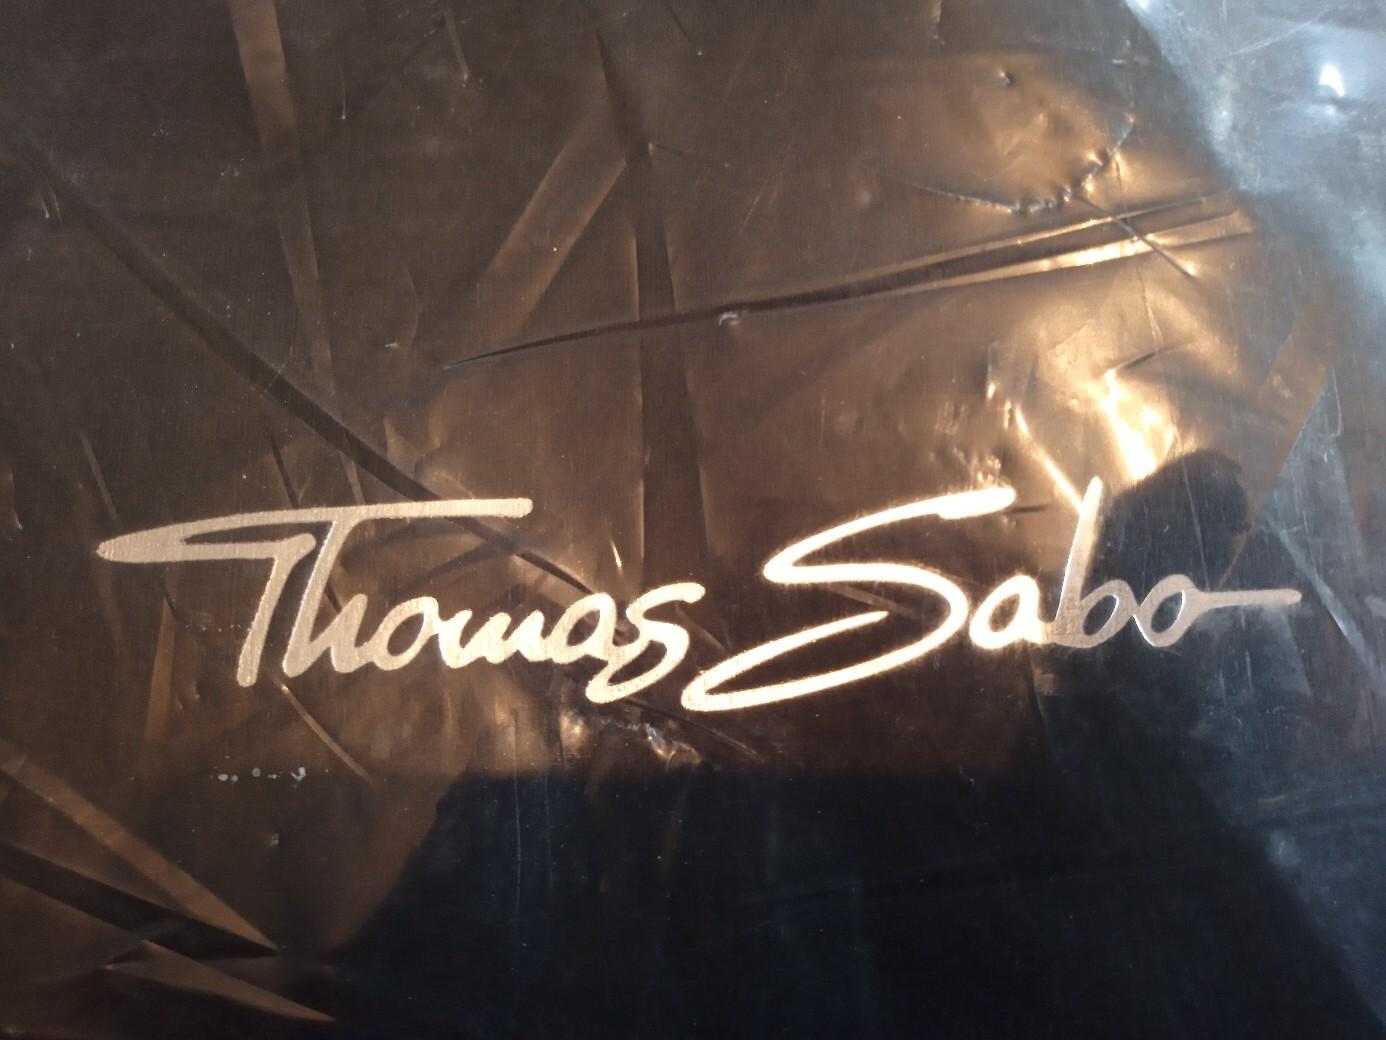 b'original Thomas Sabo gift bag #1' for sale  